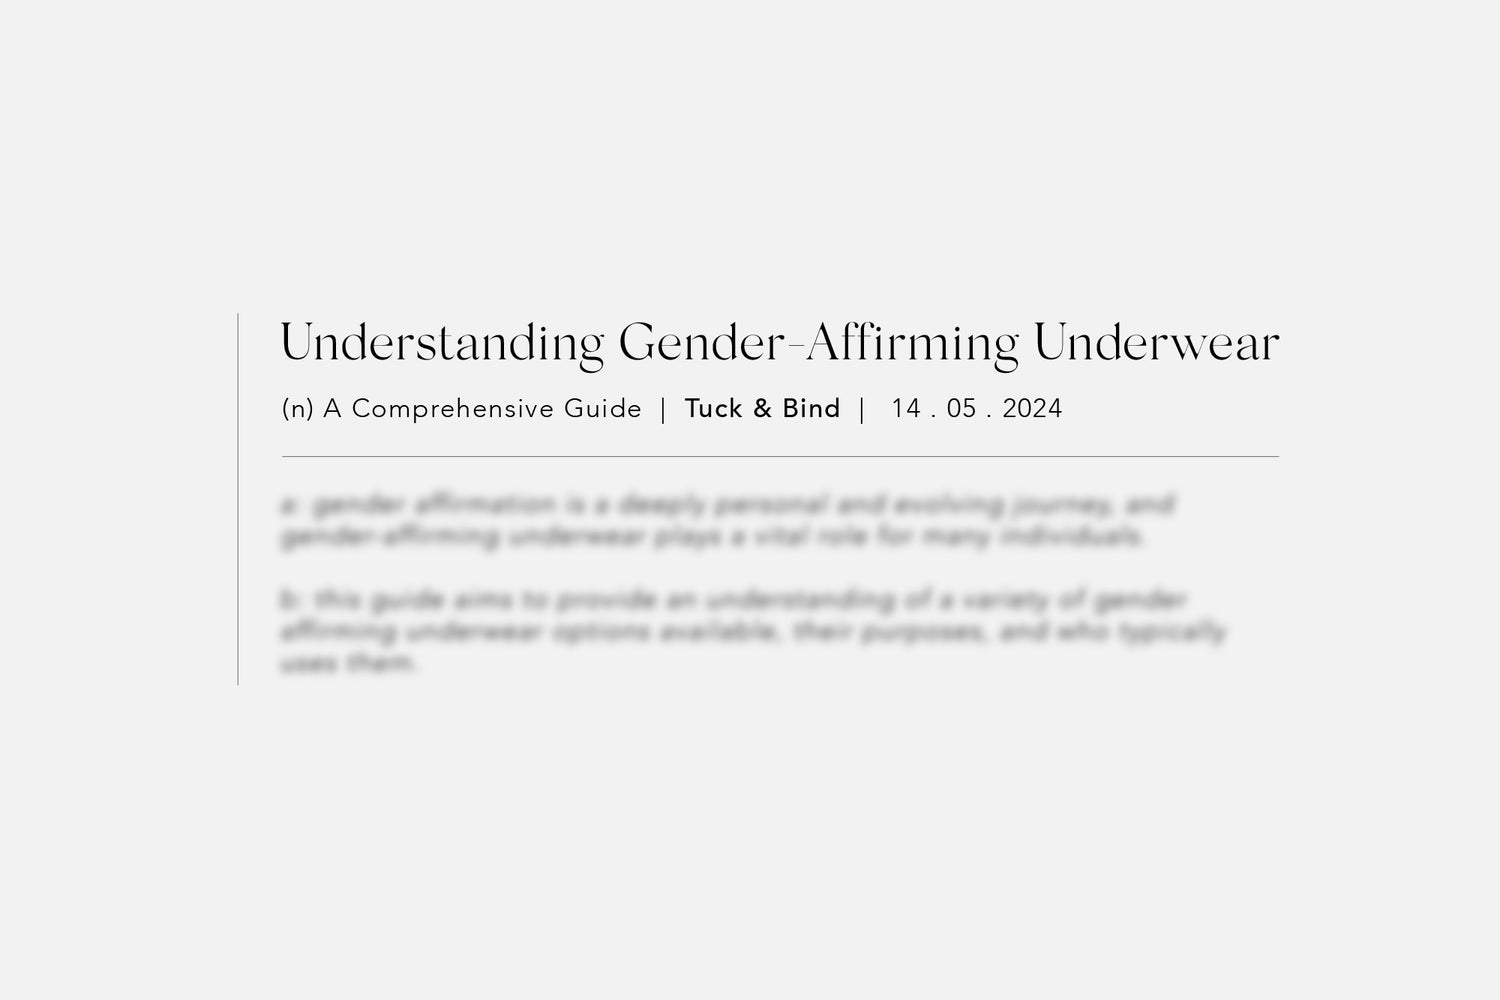 Understanding Gender Affirmation Underwear definition banner